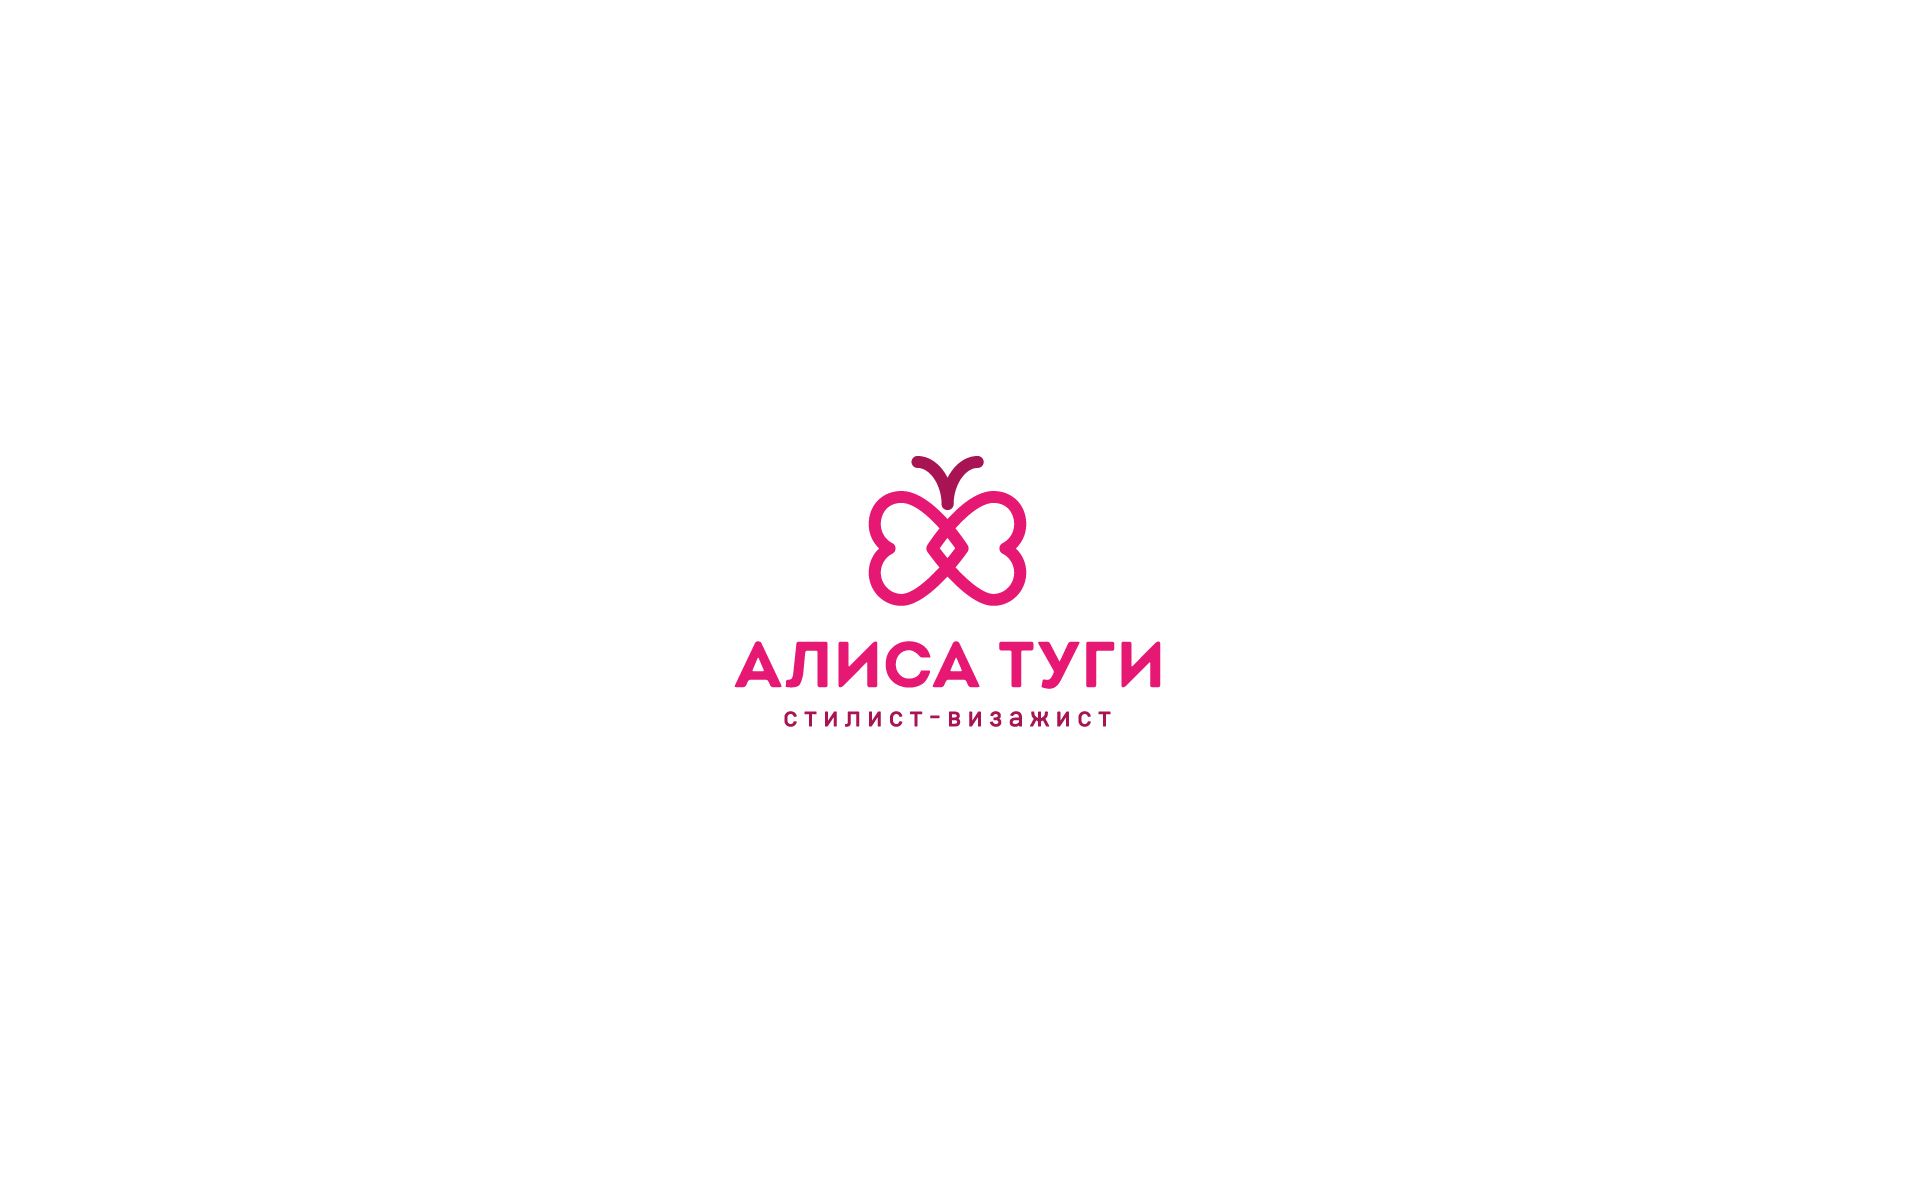 Логотип для визажиста - дизайнер U4po4mak